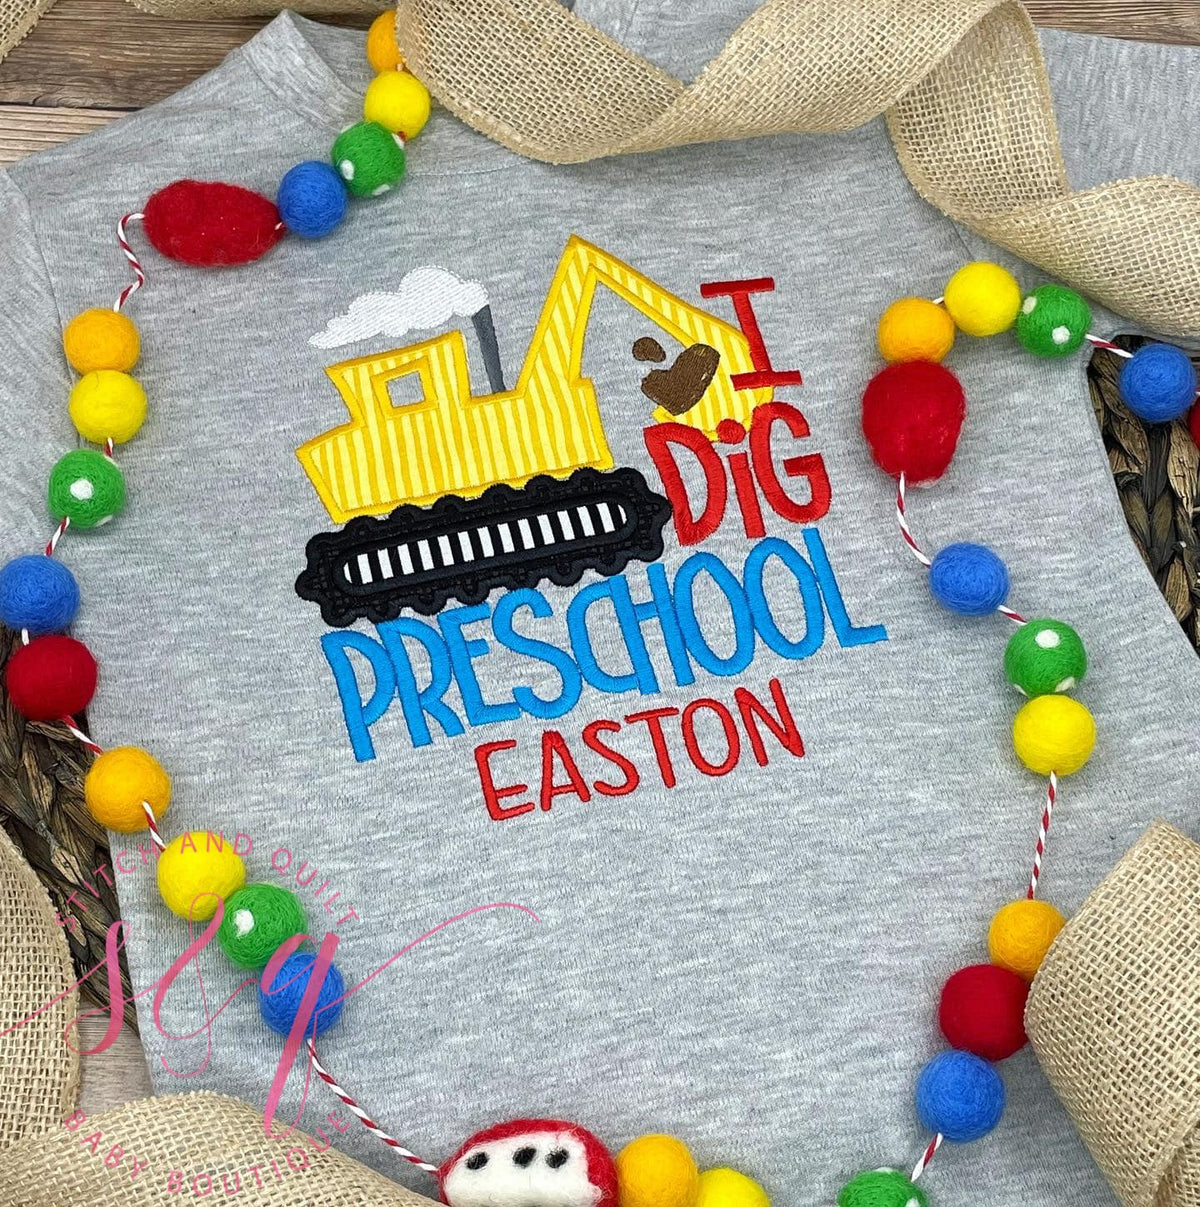 Preschool Digger shirt,  First day of school preschool shirt, Digger shirt,  I dig preschool